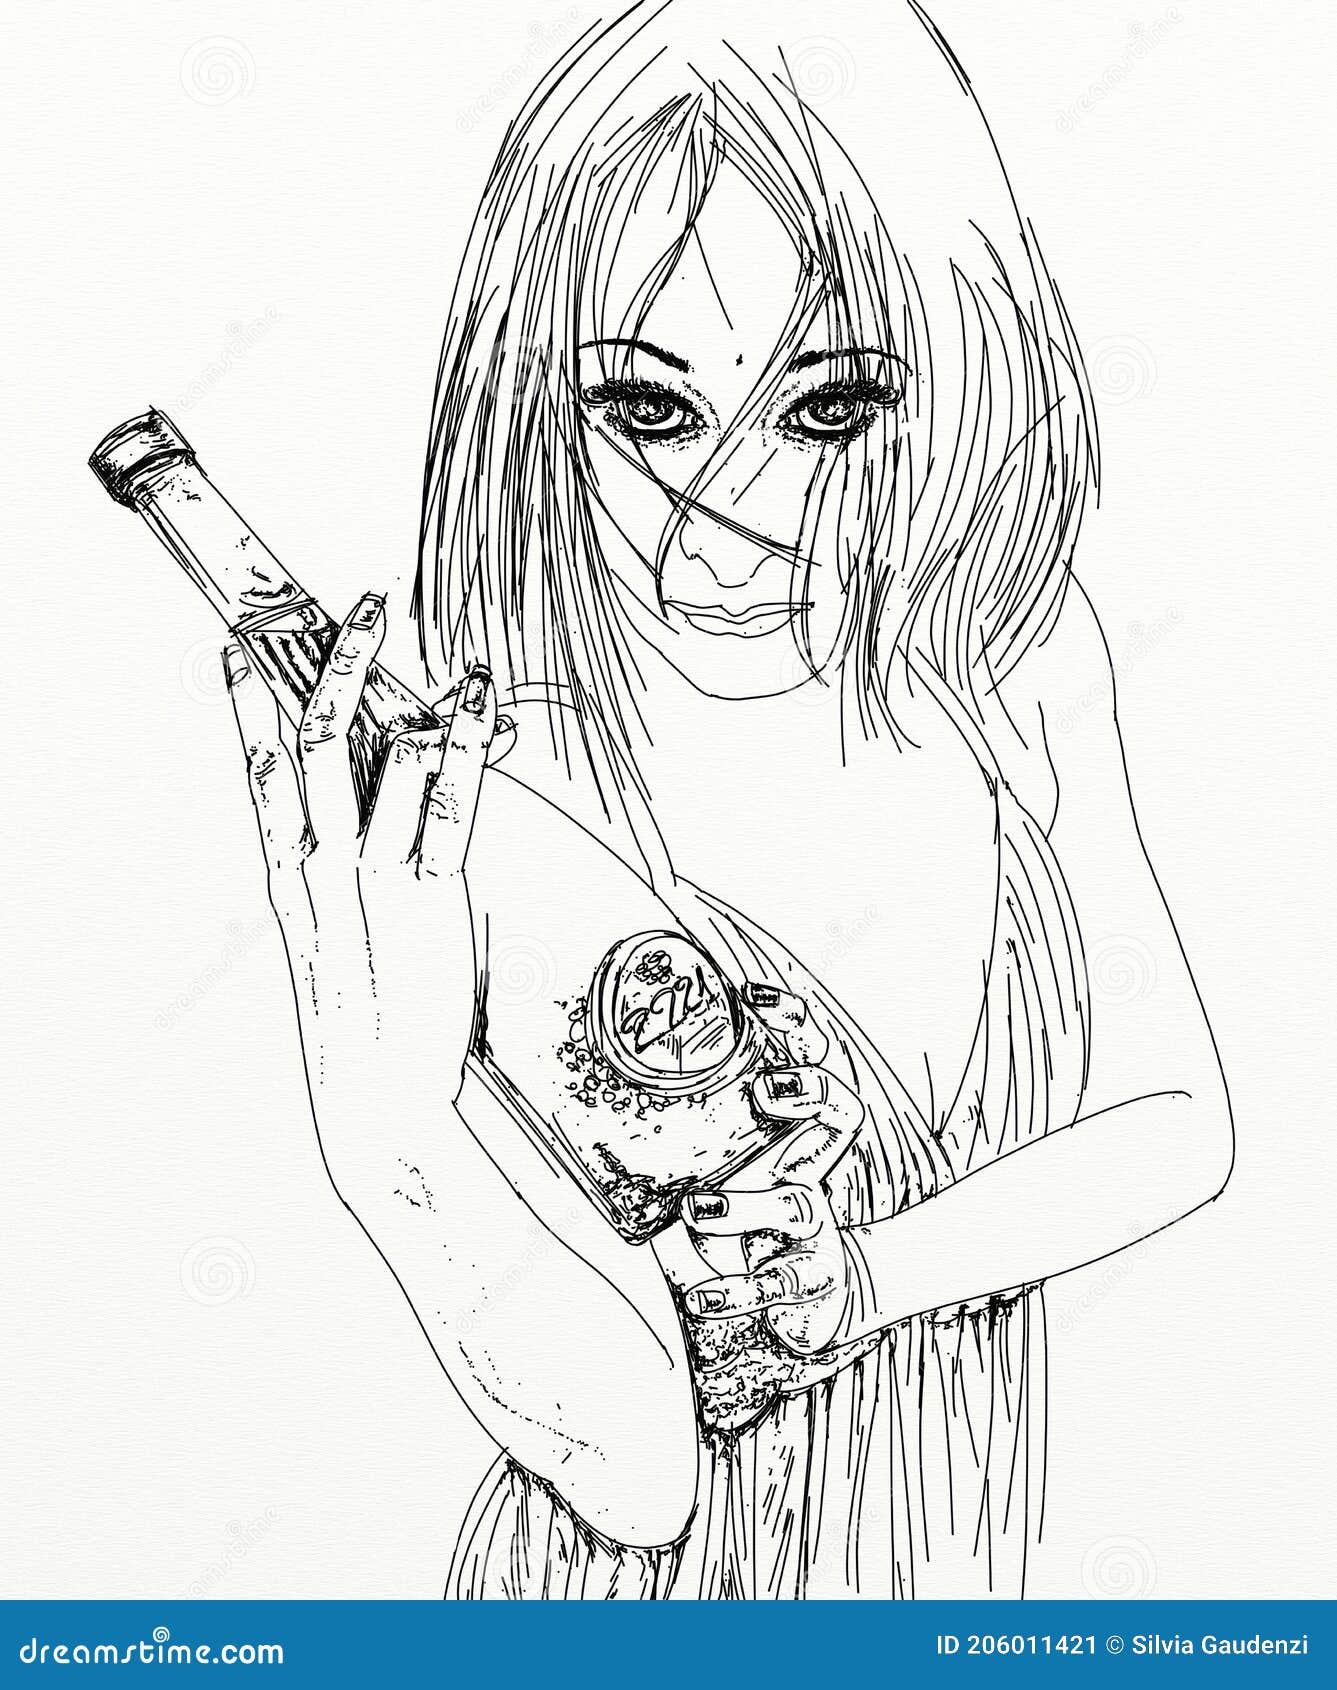 Imagem relacionada  Tumblr girl drawing, Tumblr art, Illustration art